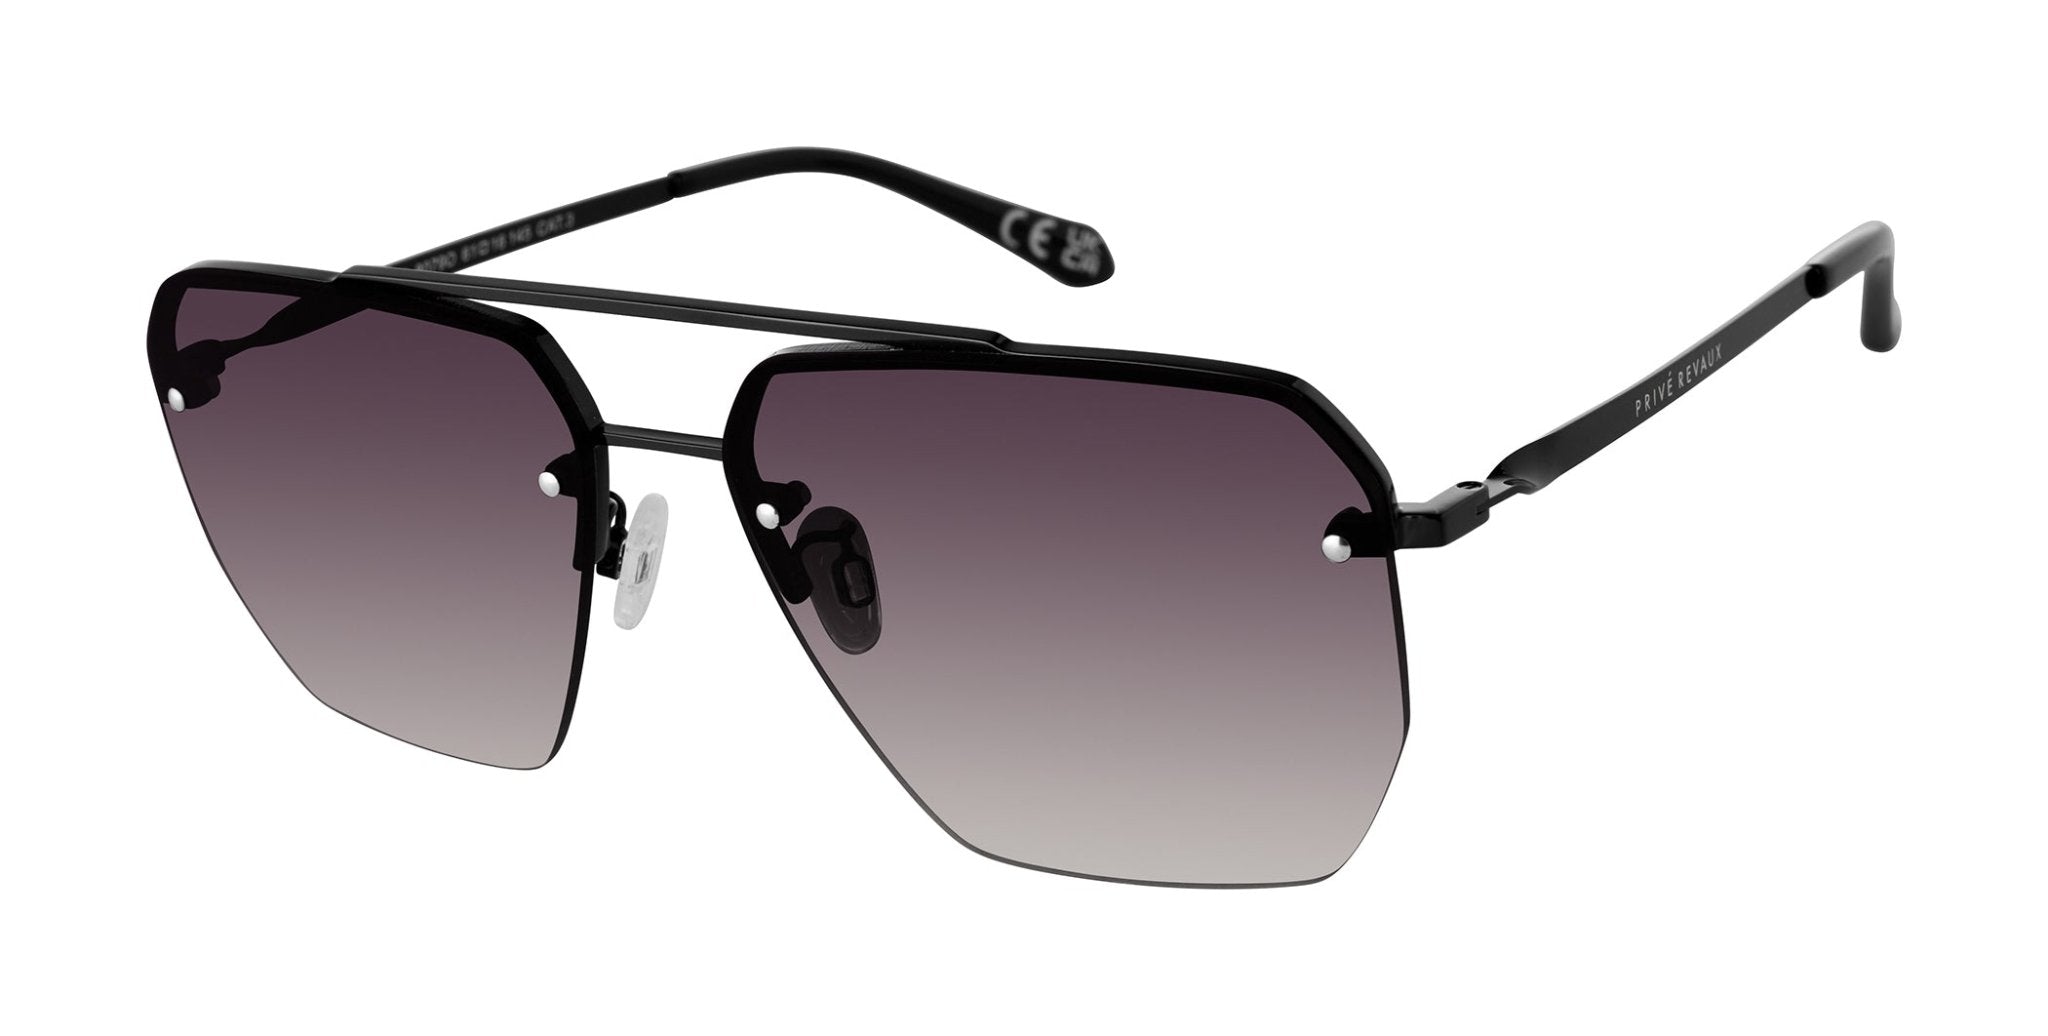 Black | Privé Revaux Off Guard Sunglasses